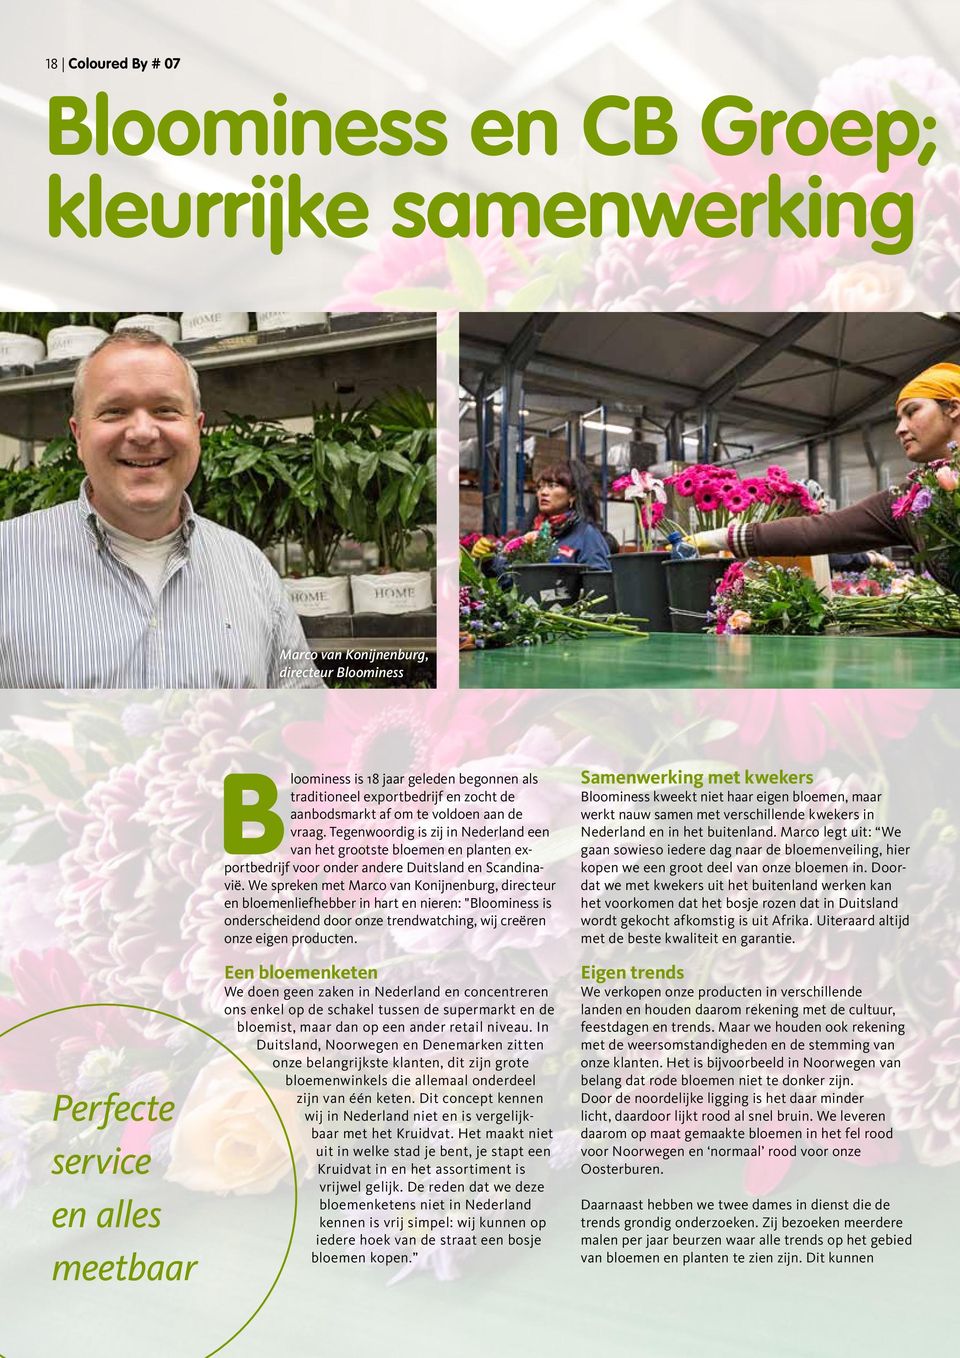 Tegenwoordig is zij in Nederland een van het grootste bloemen en planten exportbedrijf voor onder andere Duitsland en Scandinavië.